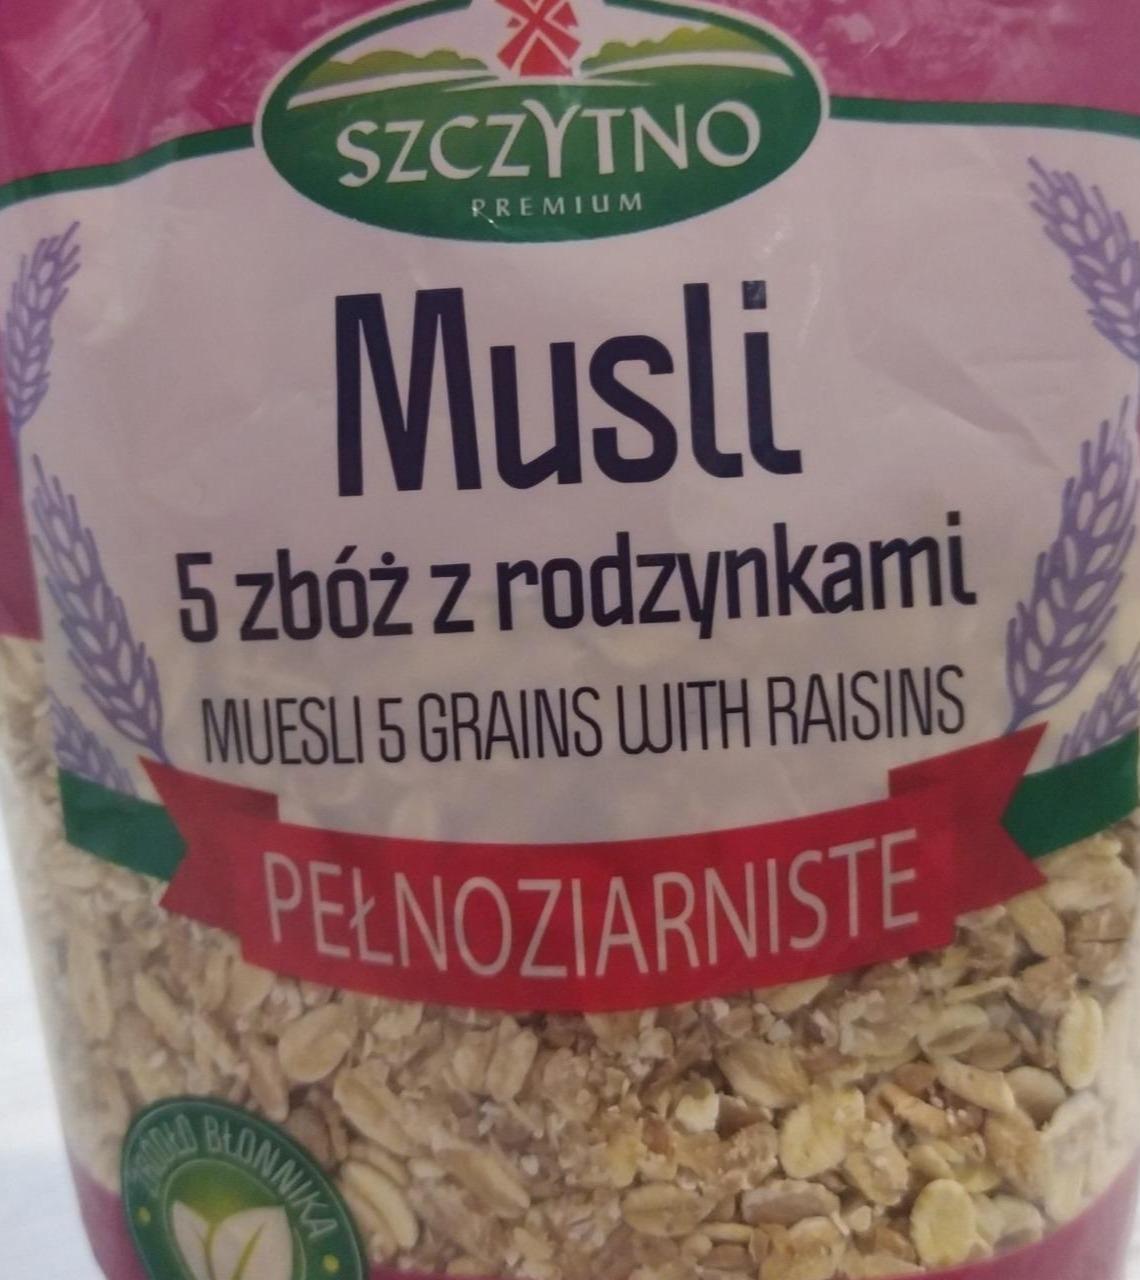 Zdjęcia - Musli 5 zbóż z rodzynkami pełnoziarniste Szczytno Premium